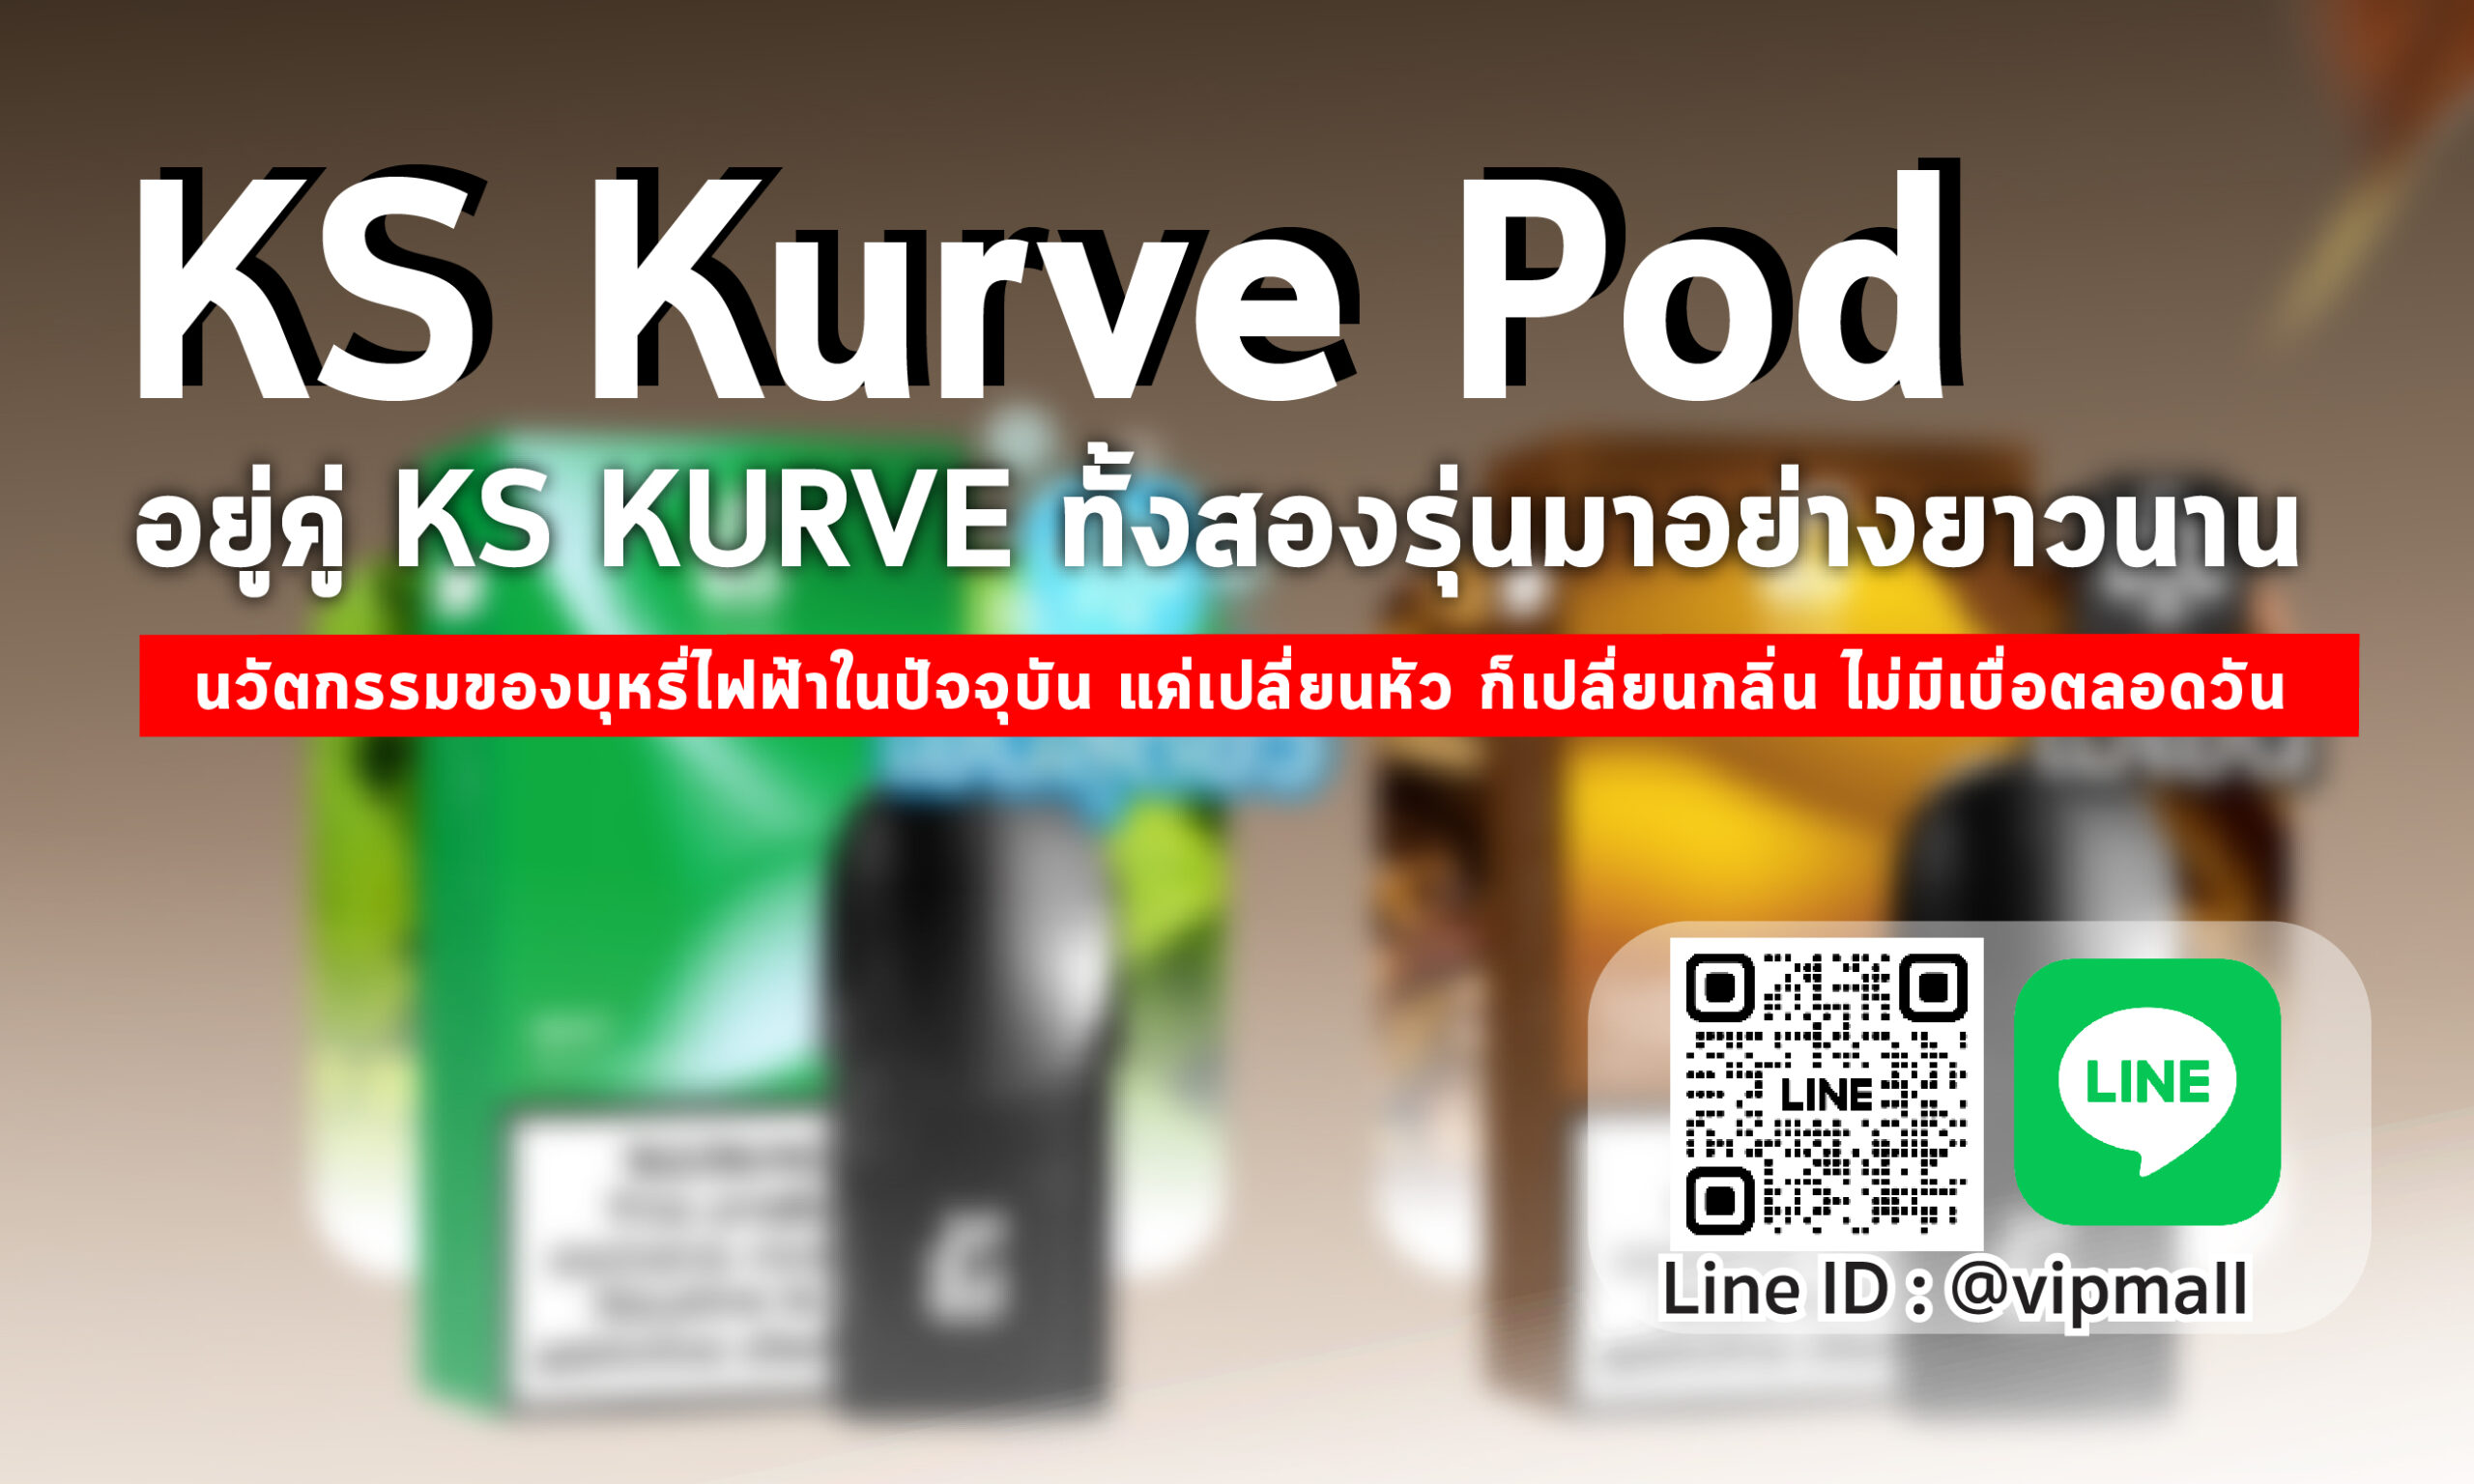 KS Kurve Pod ผลิตภัณฑ์ขั้นเทพของวงการพอตบุหรี่ไฟฟ้าในบ้านเรา รองรับ KS Kurve และ KS Kurve Lite ทั้งสองรุ่น หัวบุหรี่ไฟฟ้านิคถึงๆ จากแบรนด์ดัง